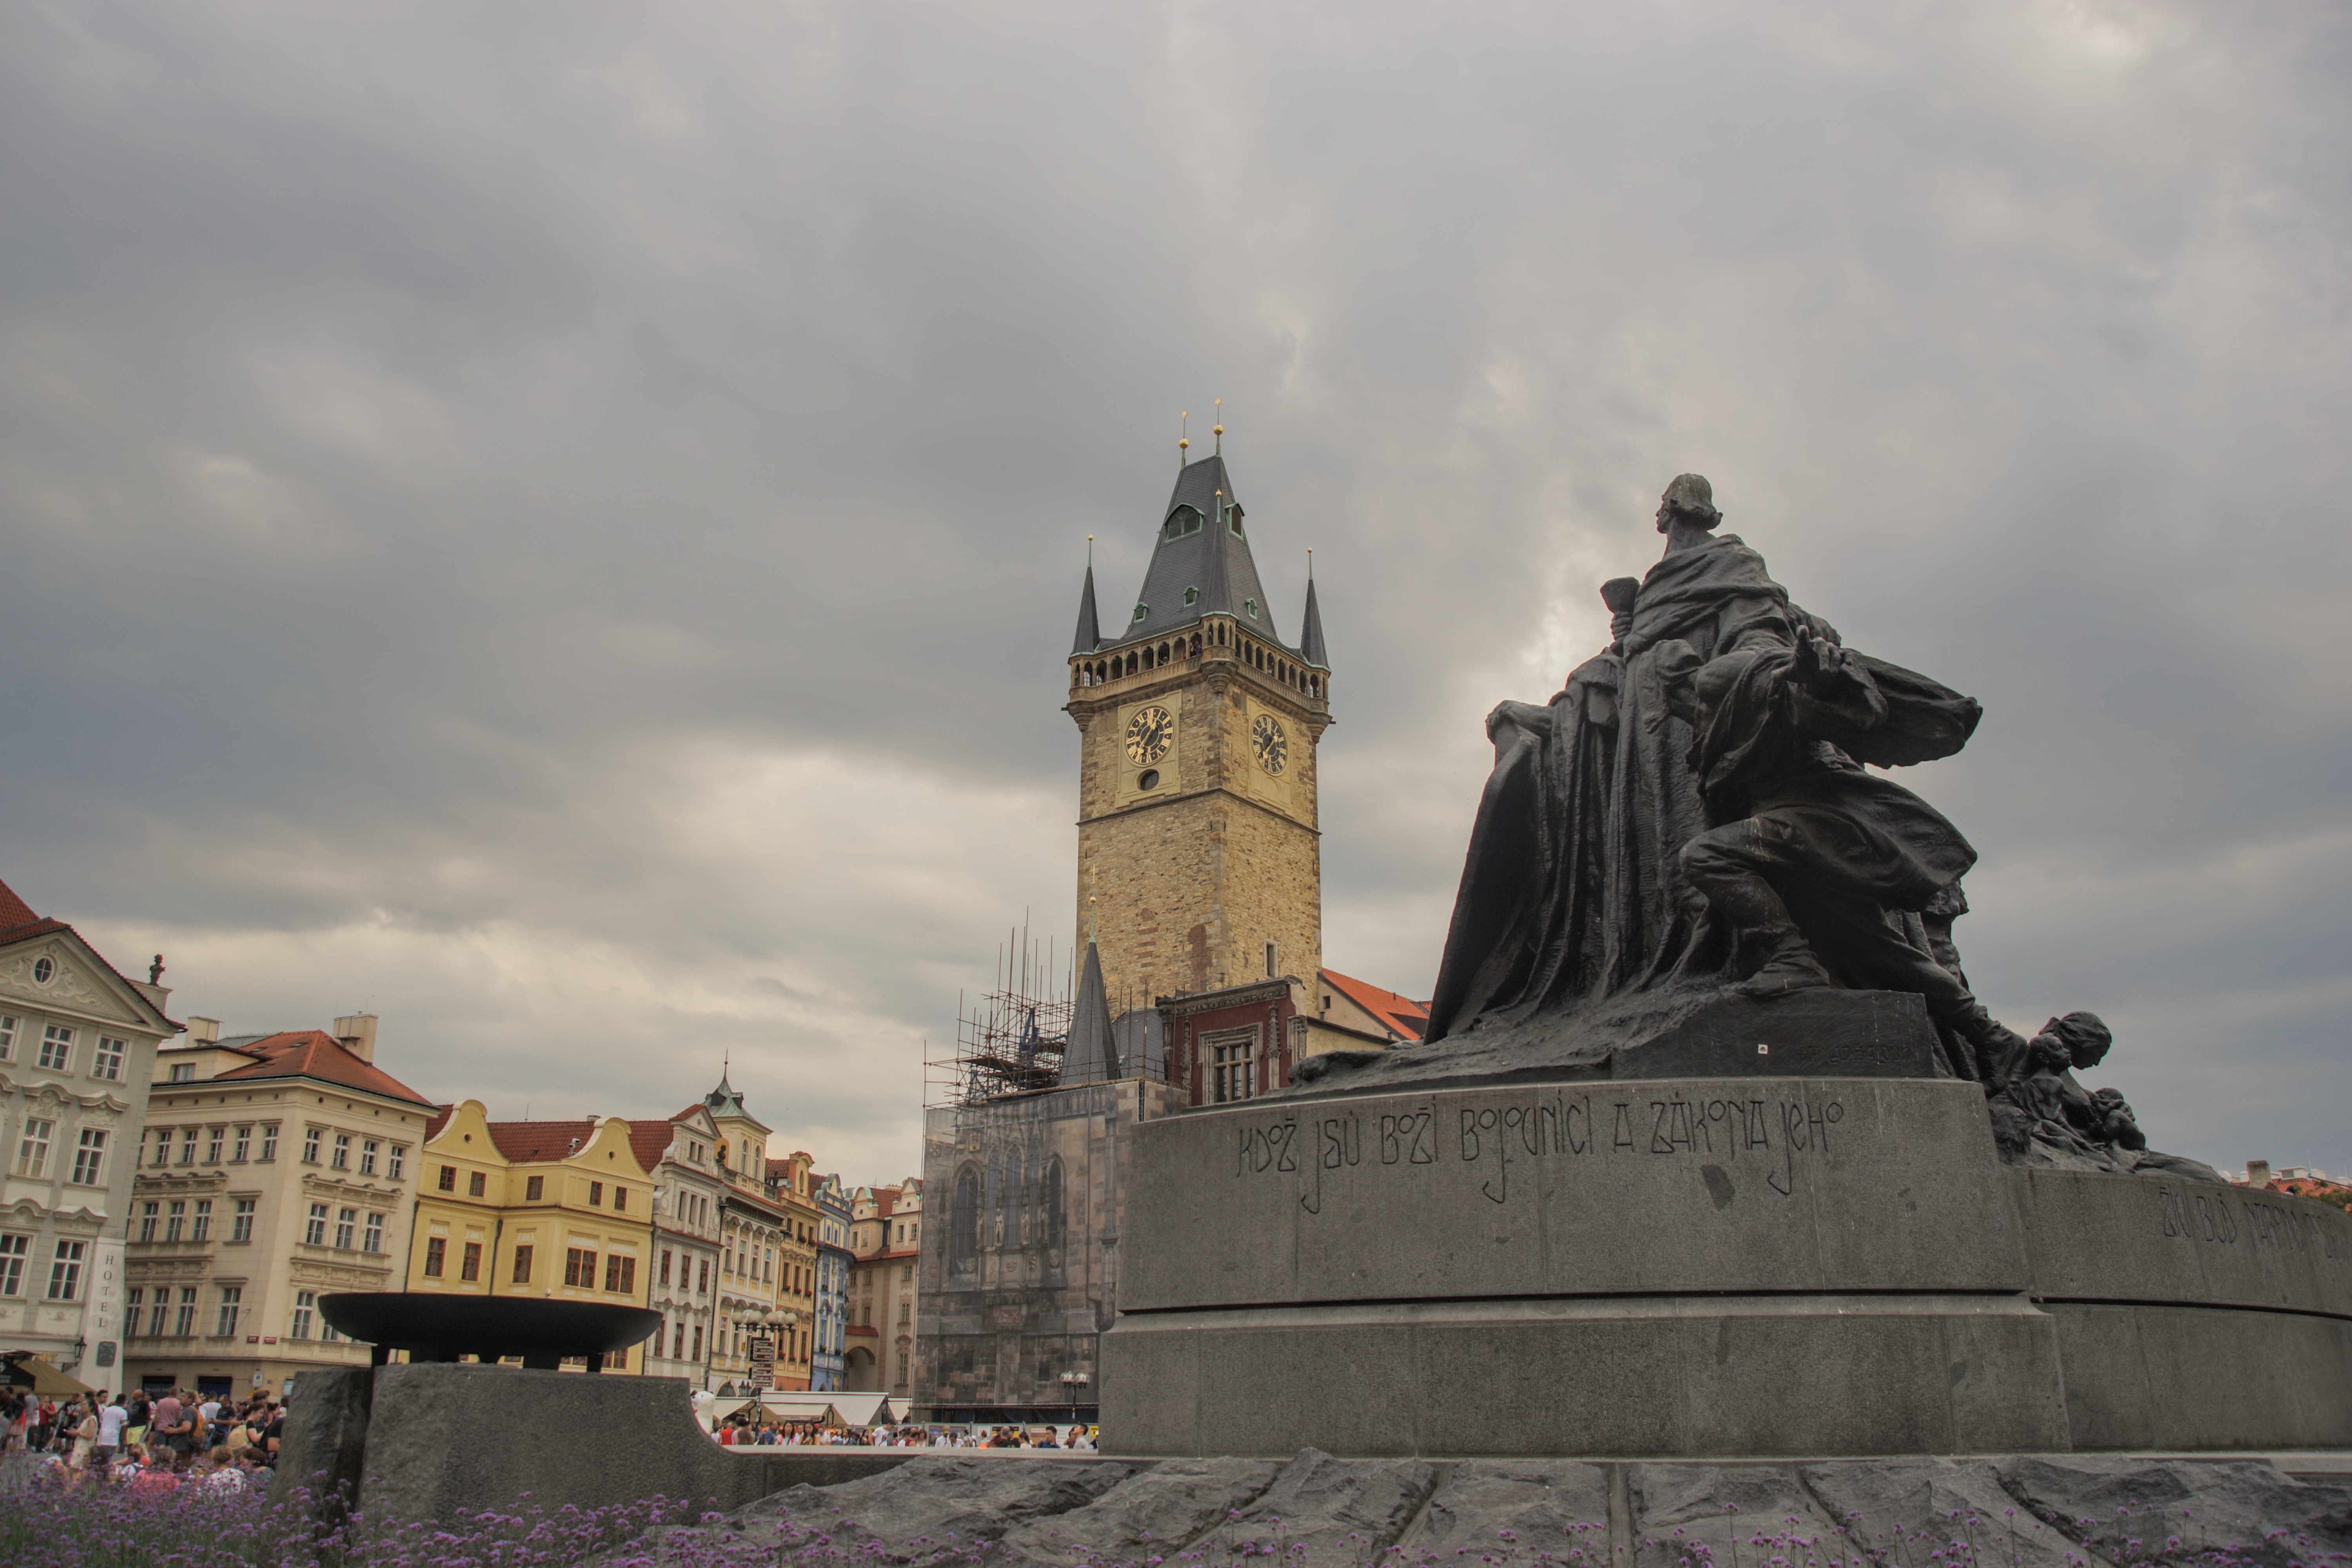 Η πλατεία της Παλιάς Πόλης με το άγαλμα του Τσέχου φιλόσοφου Jan Hus, που κάηκε στην πυρά το 1415 για τις ριζοσπαστικές απόψεις του, με την επιγραφή "Η αλήθεια θα νικήσει". Στο βάθος το υπό ανακαίνιση Ρολόι της Πλατείας ( Φωτογραφία Νίκος Πράσσος )